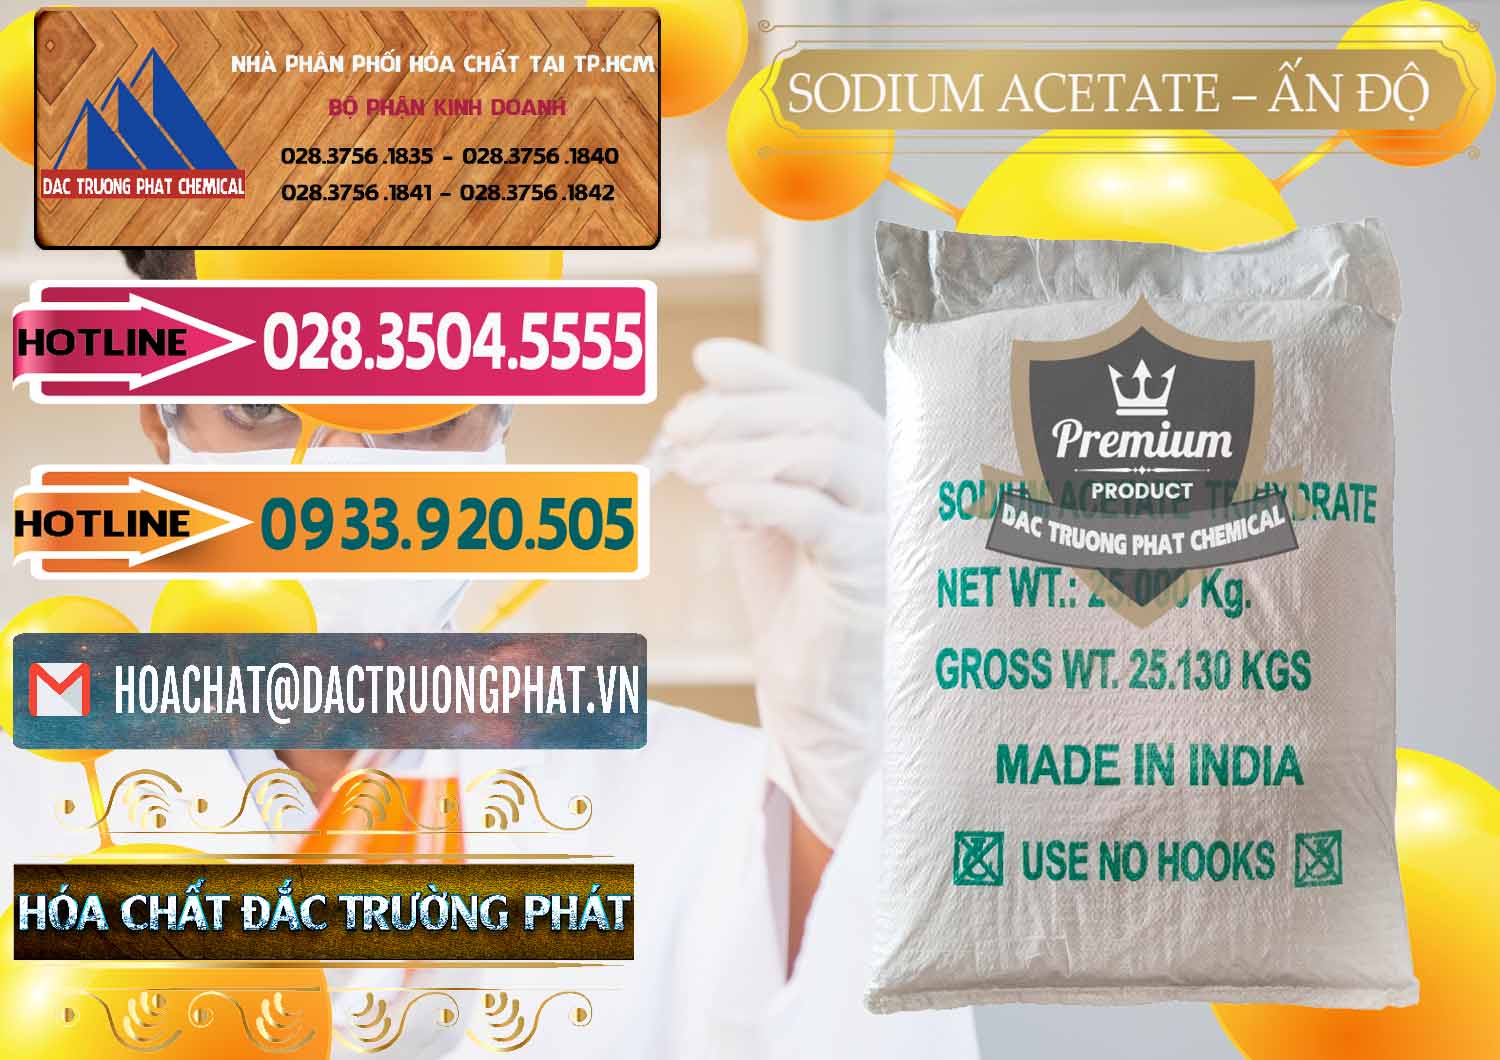 Cty kinh doanh & bán Sodium Acetate - Natri Acetate Ấn Độ India - 0133 - Phân phối & bán hóa chất tại TP.HCM - dactruongphat.vn